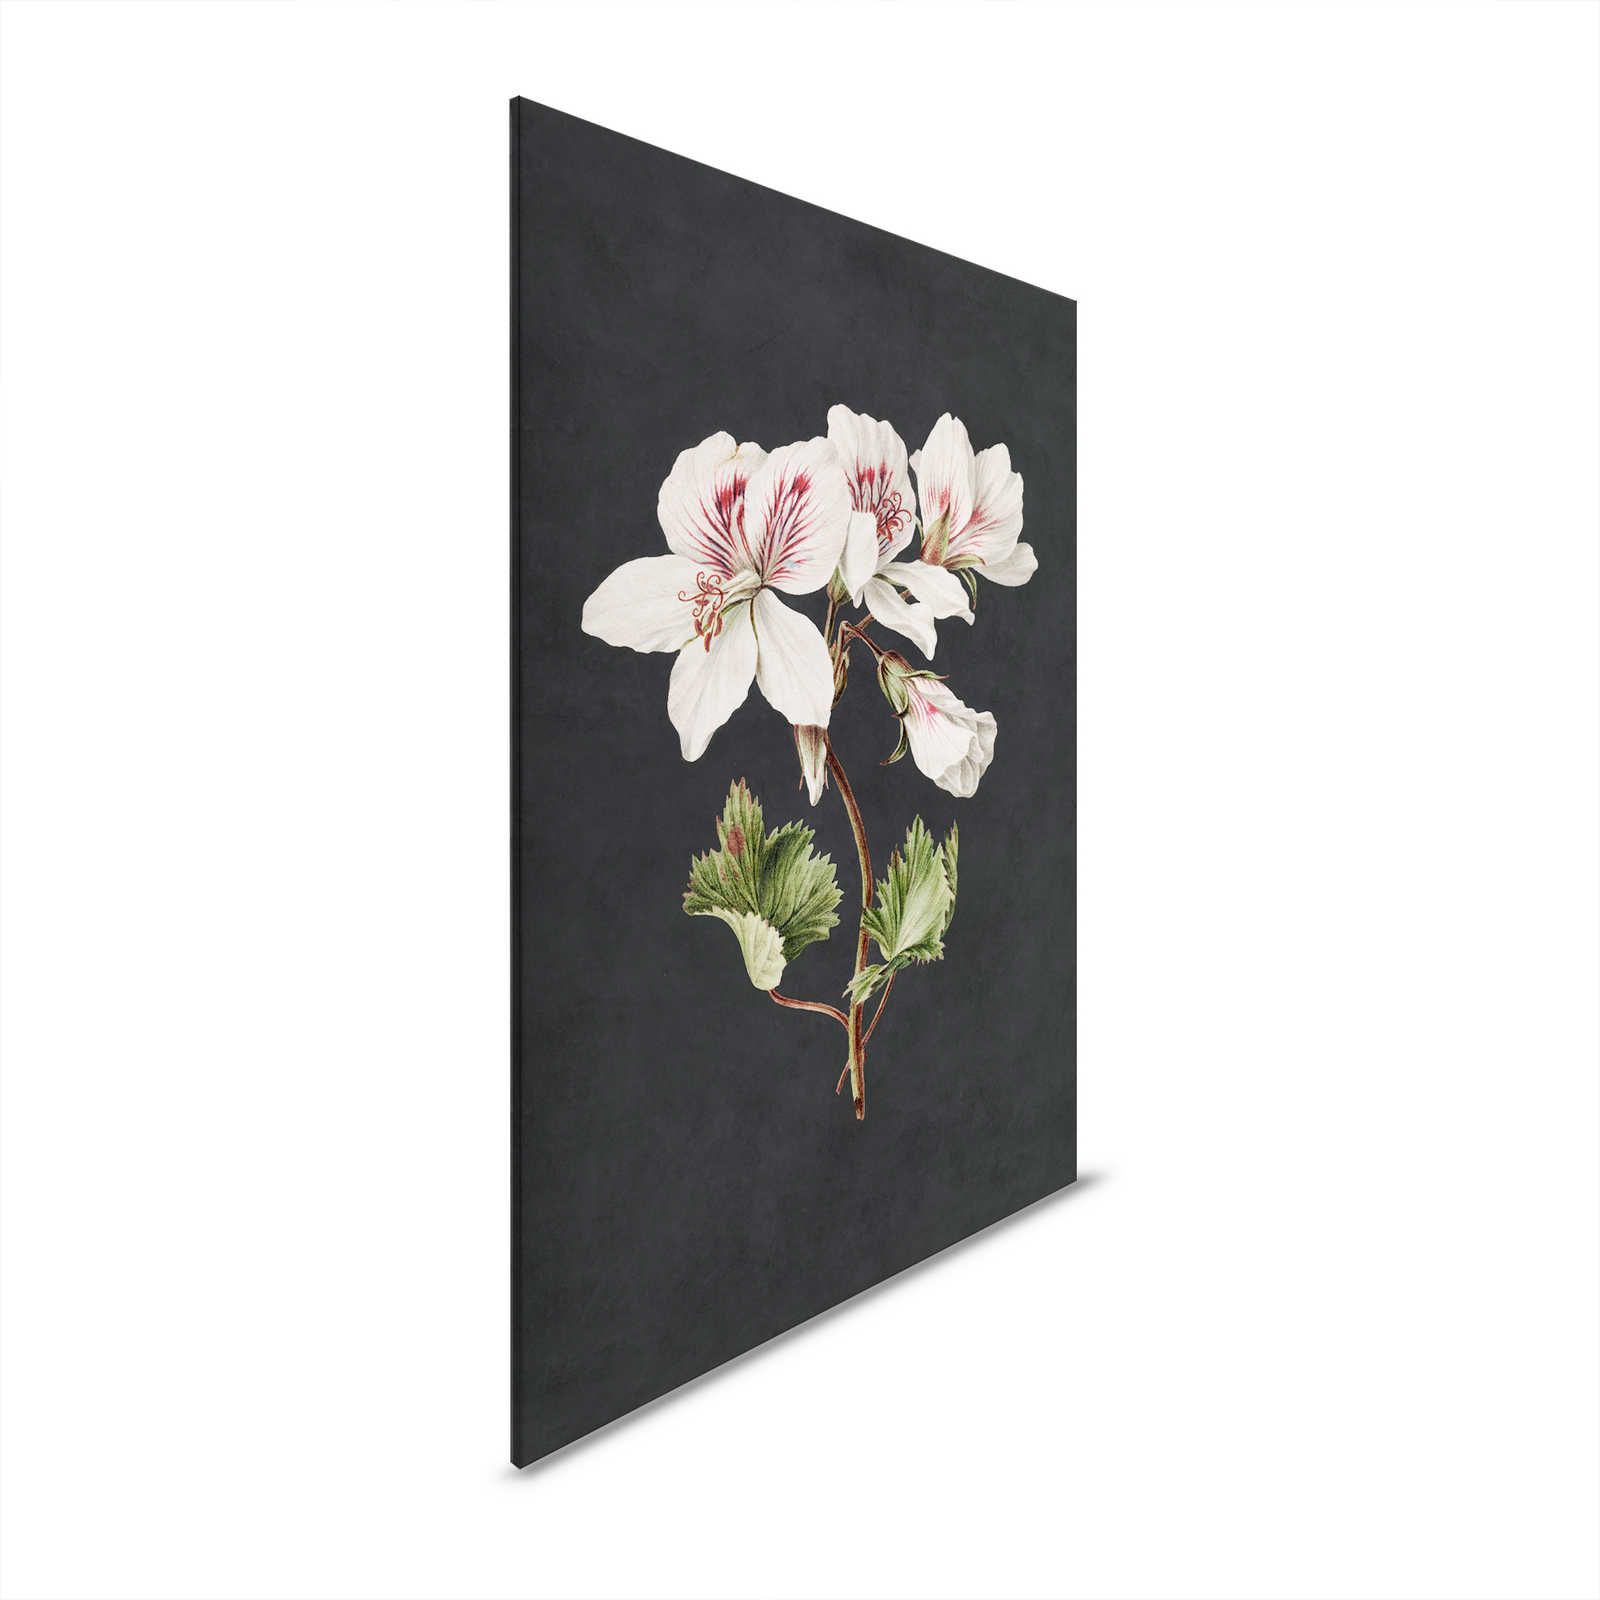 Giardino di mezzanotte 1 - Quadro su tela nera Stile pittura giglio in fiore - 0,60 m x 0,90 m
